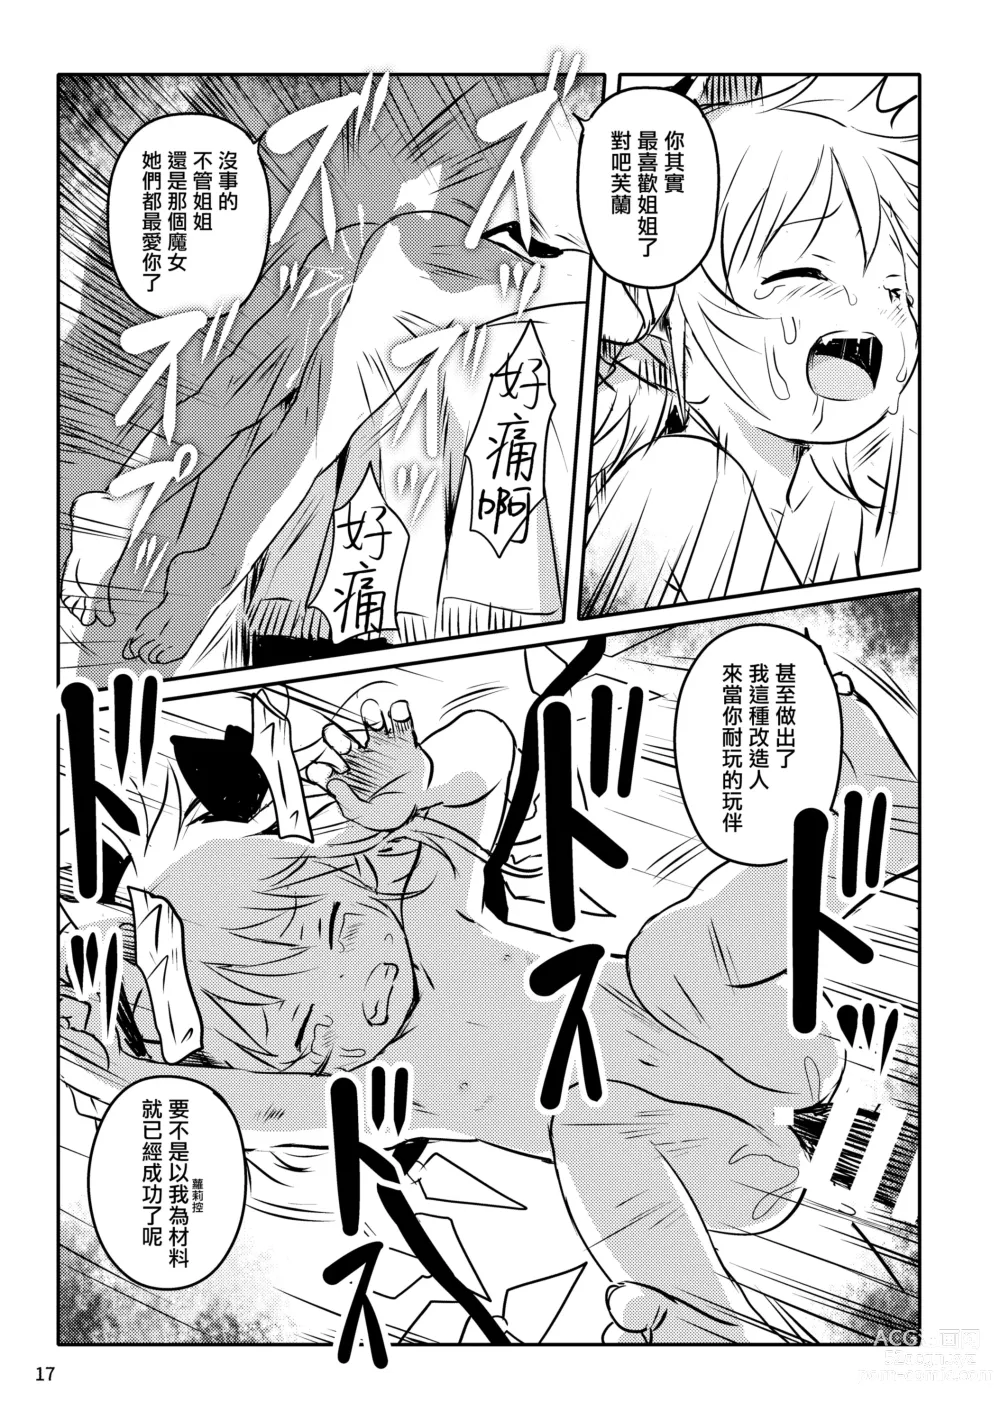 Page 17 of doujinshi 是好孩子吧!芙蘭醬!